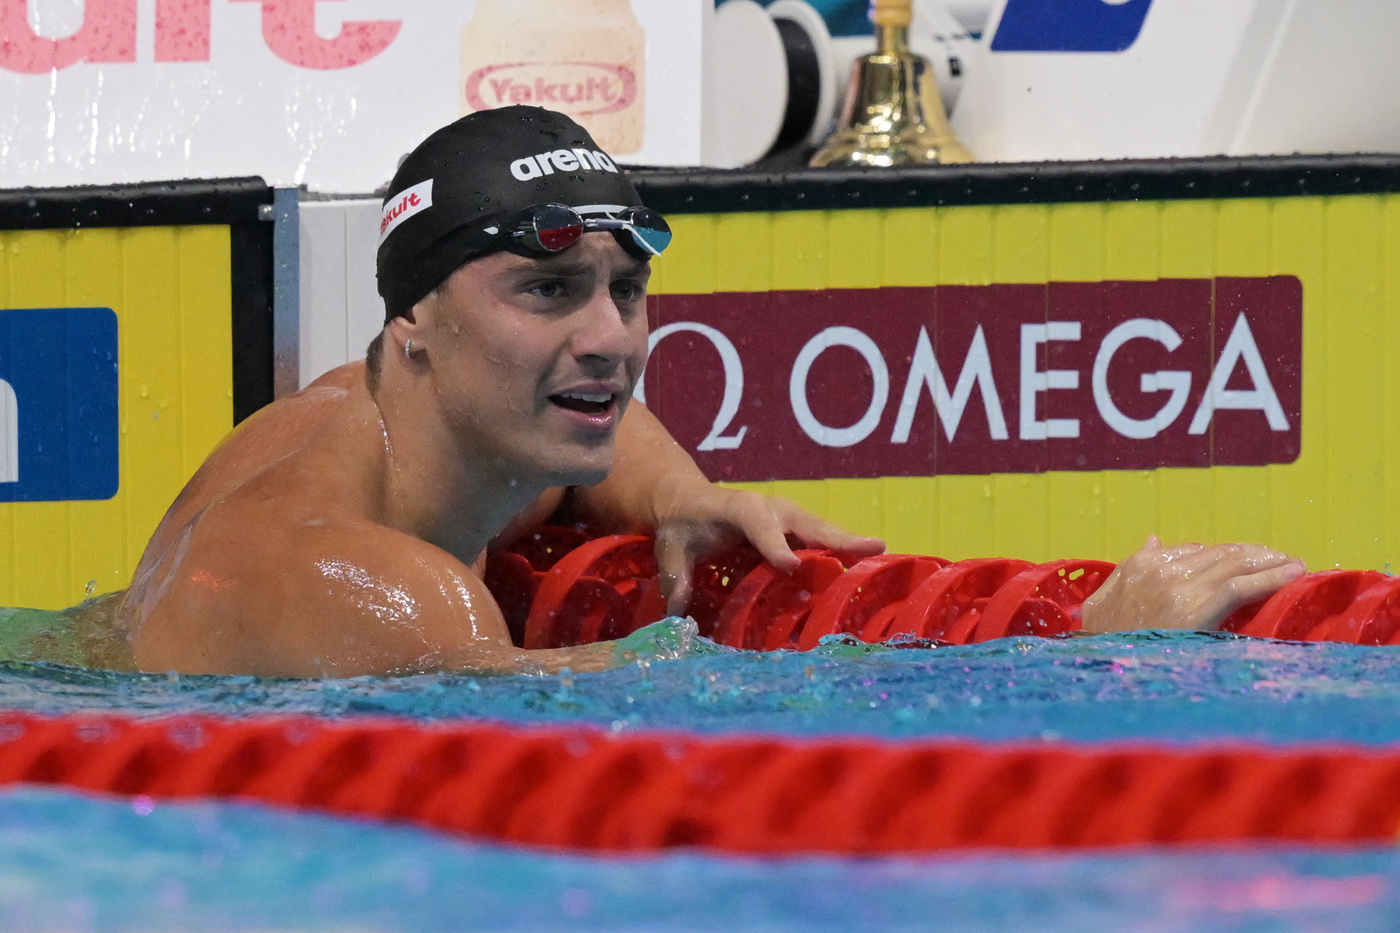 Nuoto, Nicolò Martinenghi all’esame Adam Peaty. Il britannico non è al meglio ma a Roma ci sarà